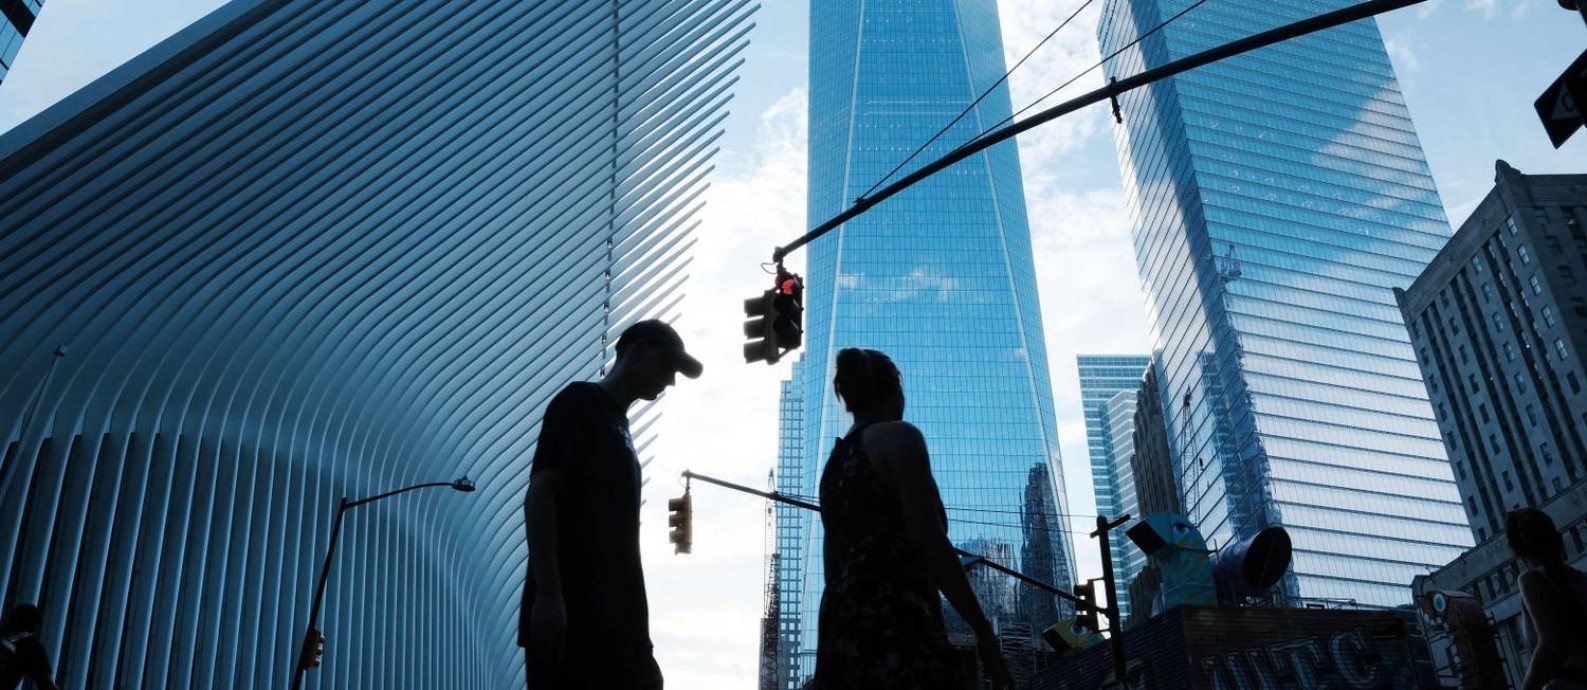 Nova-iorquinos caminham próximo ao novo World Trade Center e ao 'marco zero' do ataque de 11/9 Foto: SPENCER PLATT / AFP/30-9-21